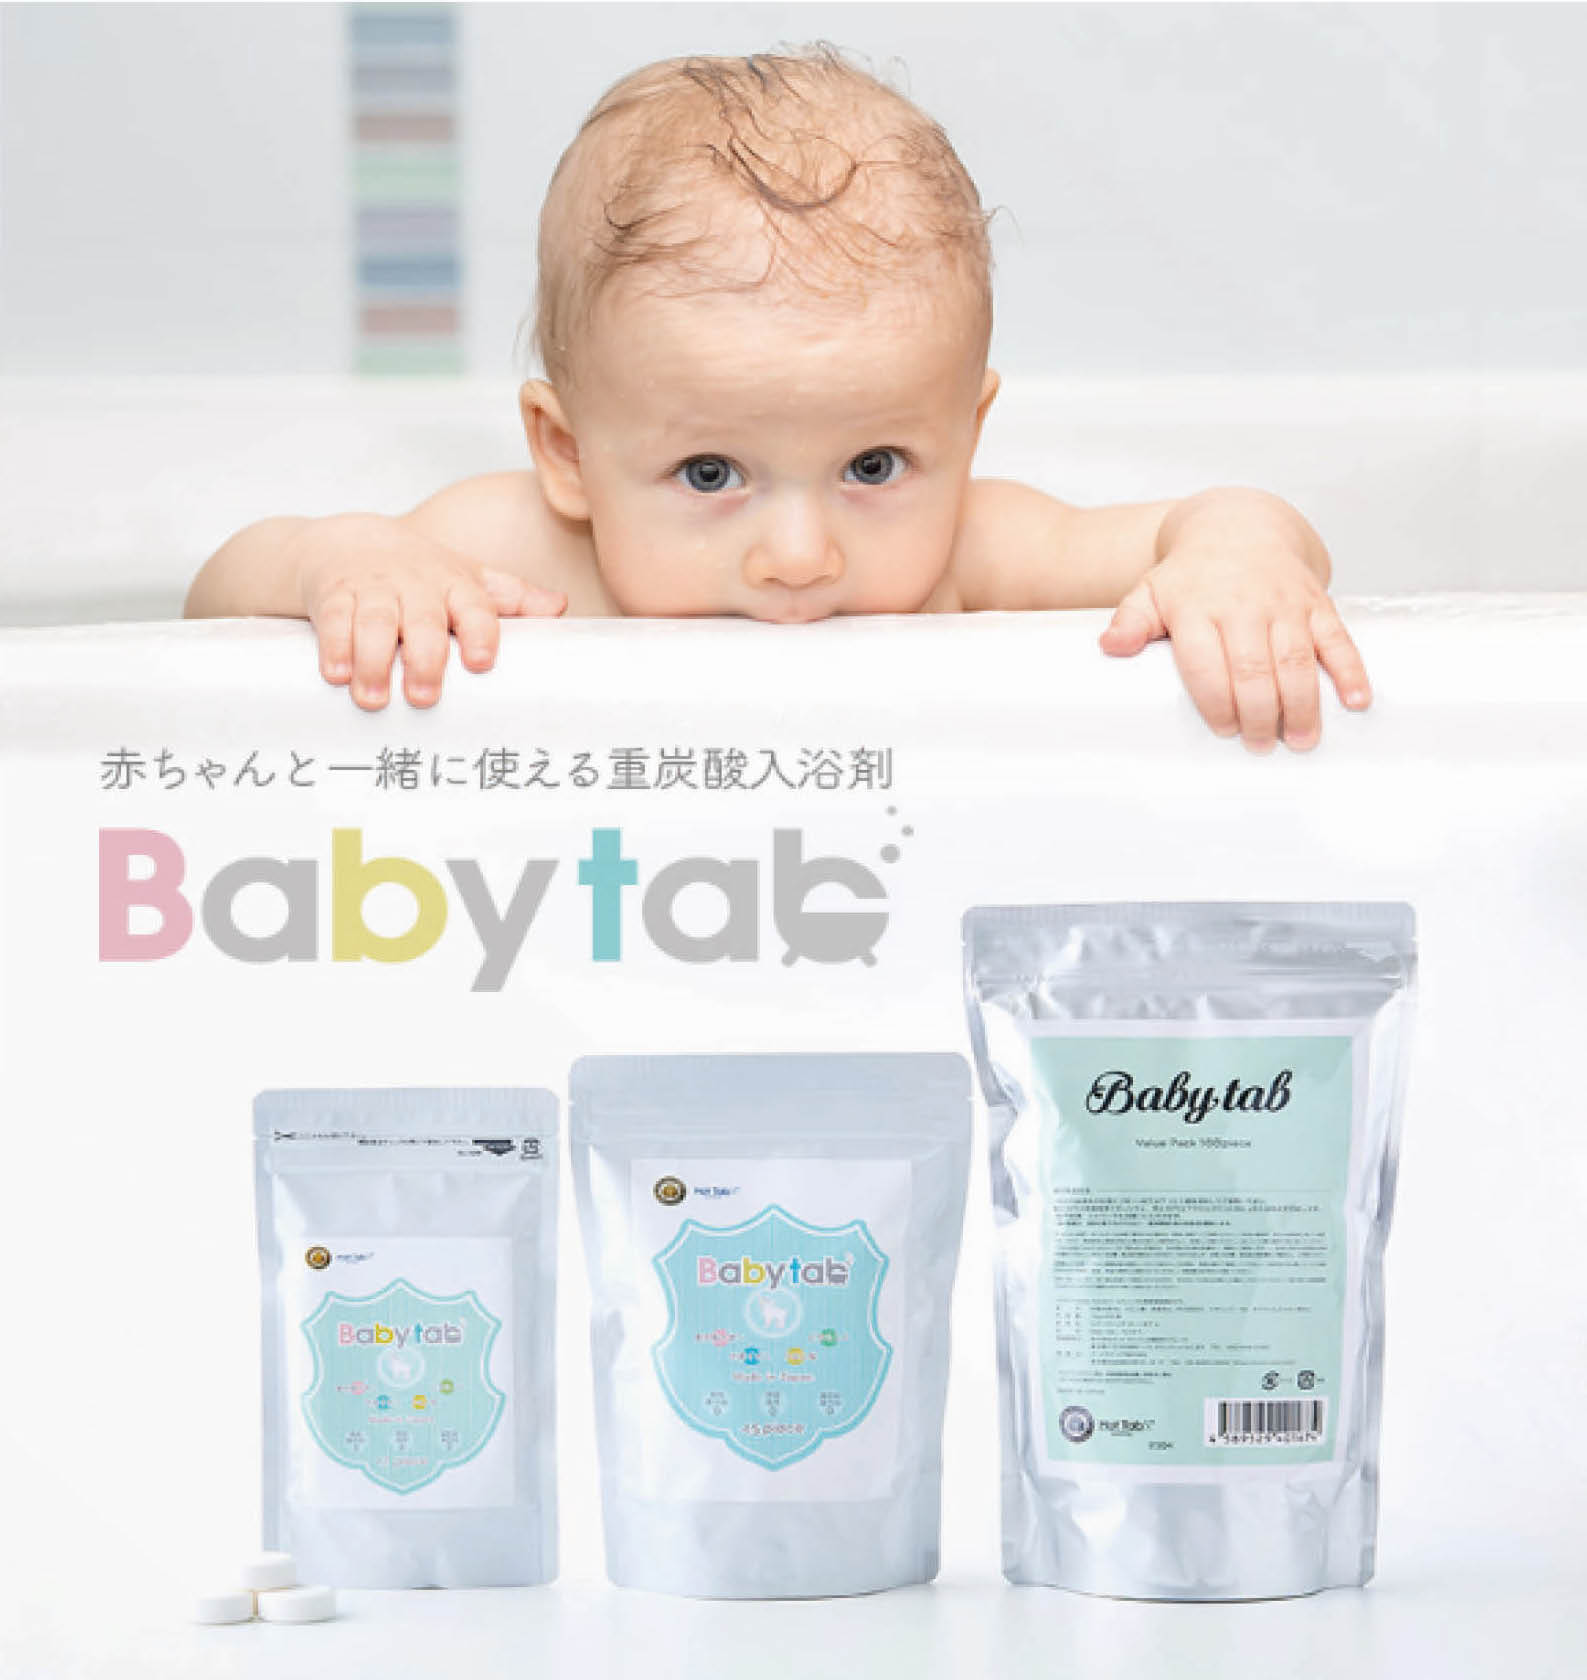 赤ちゃん から一緒に使える無添加の重炭酸入浴剤 Babytab ベビタブ が 第13回ペアレンティングアワード のモノ部門を受賞 Bestunning株式会社のプレスリリース